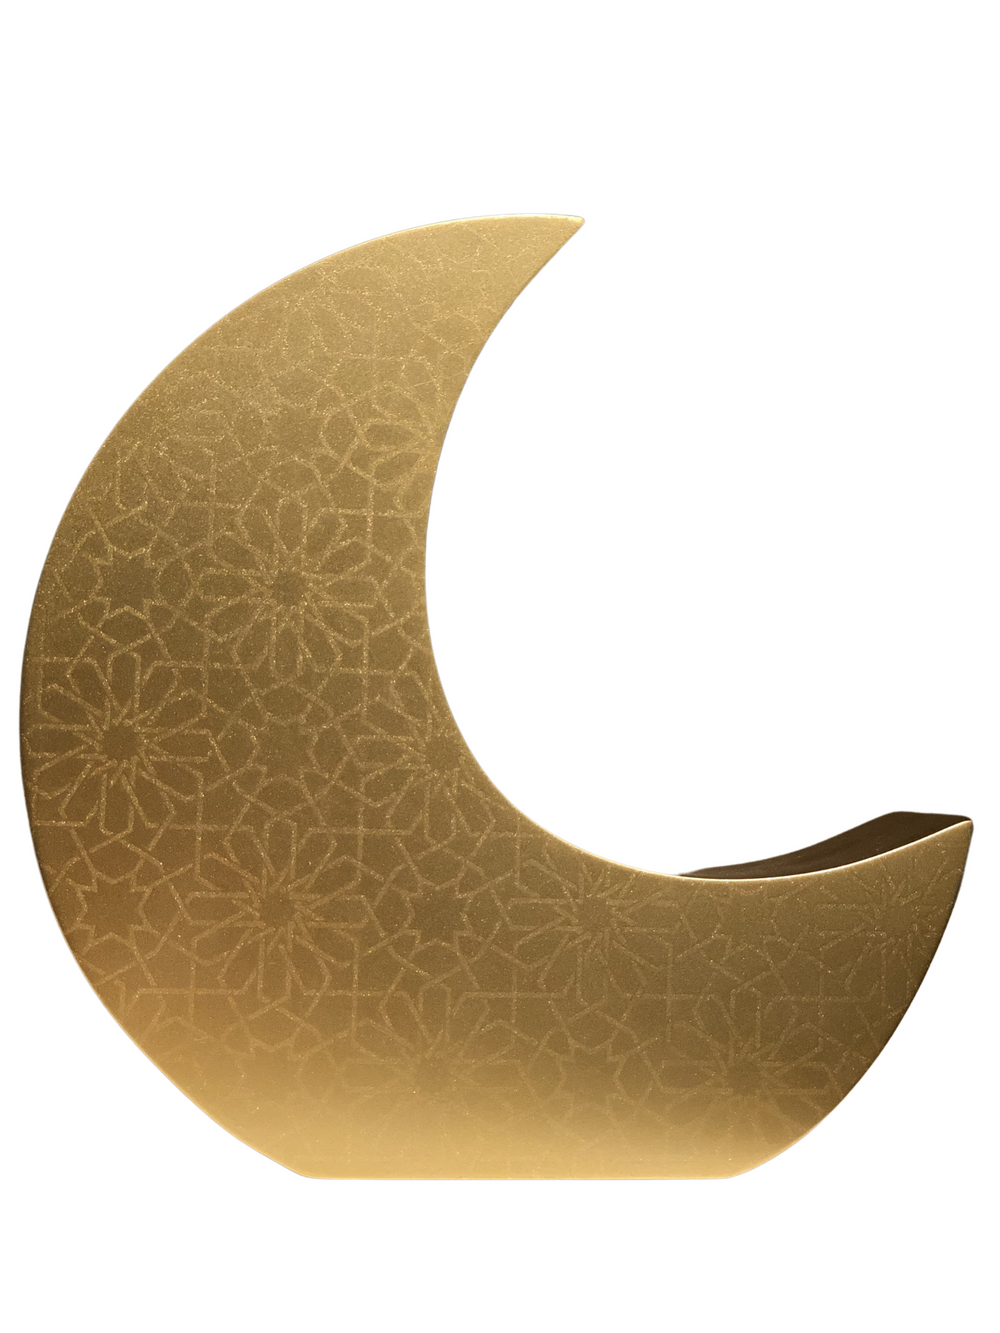 Crescent Moon Charity (Sadaqah) Coin Bank - Traditional Gold